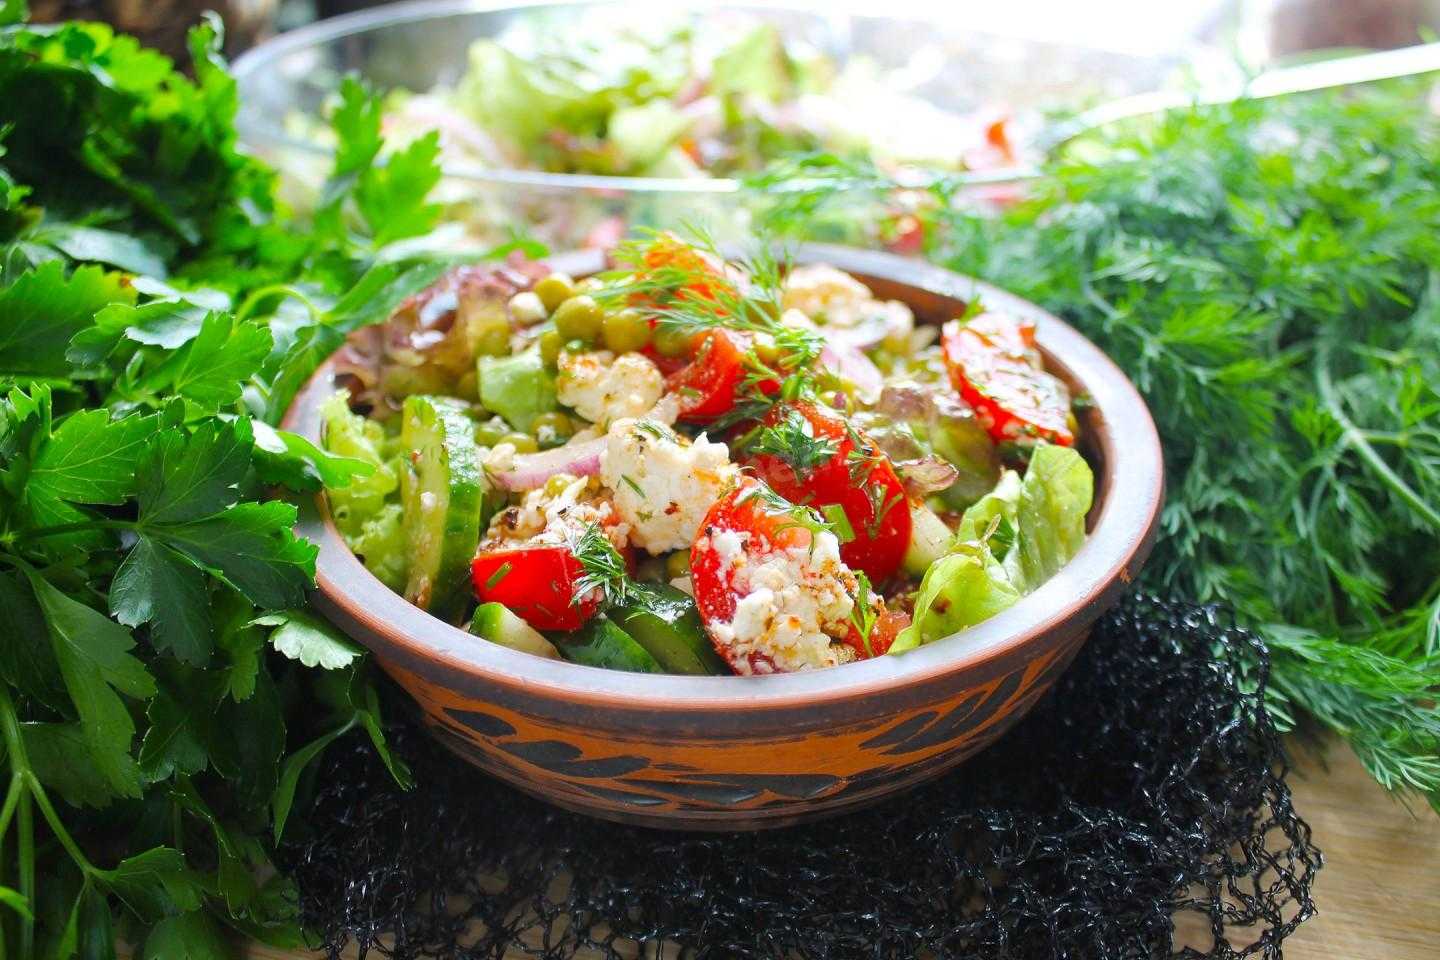 Держи 20 рецептов самых вкусных диетических салатов Действительно, старые рецепты салатов из детства имеют мало общего с полезным питанием Но и здоровые блюда не ограничиваются капустой или просто нарезкой помидоров